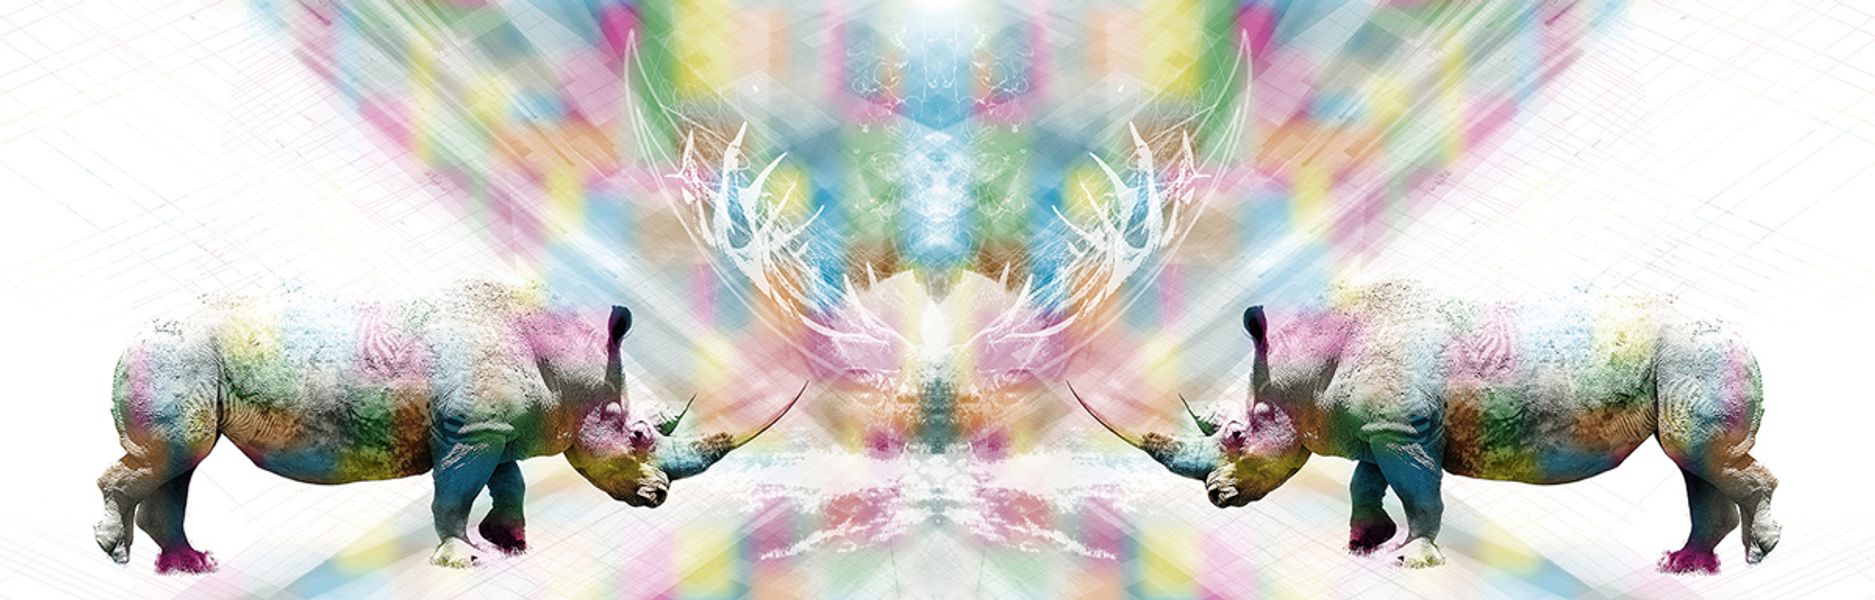 Jörg Conrad digitale Composition Nashorn Spiegelung und bunte Farbe in der Mitte